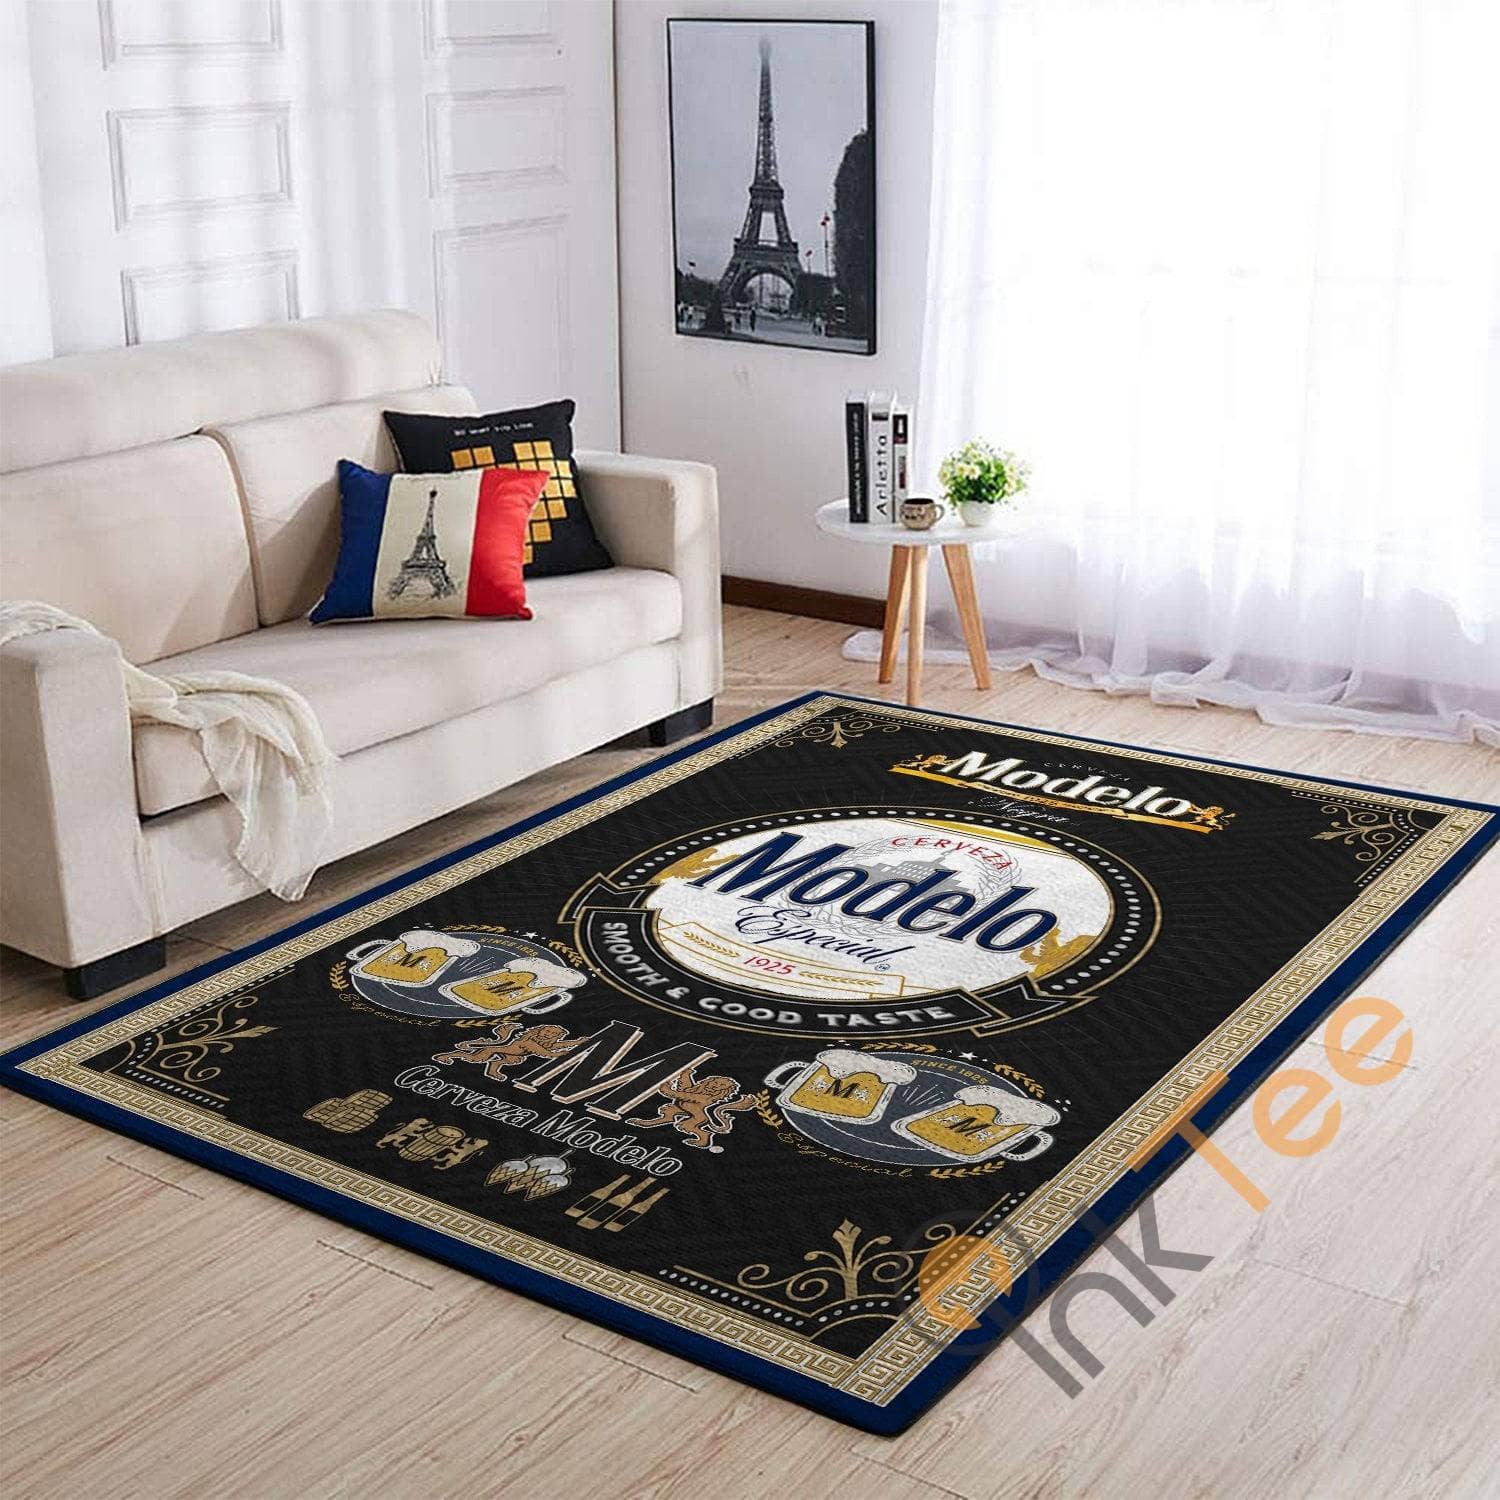 Modelo Especial Beer Soft Livingroom Carpet Highlight For Home Rug